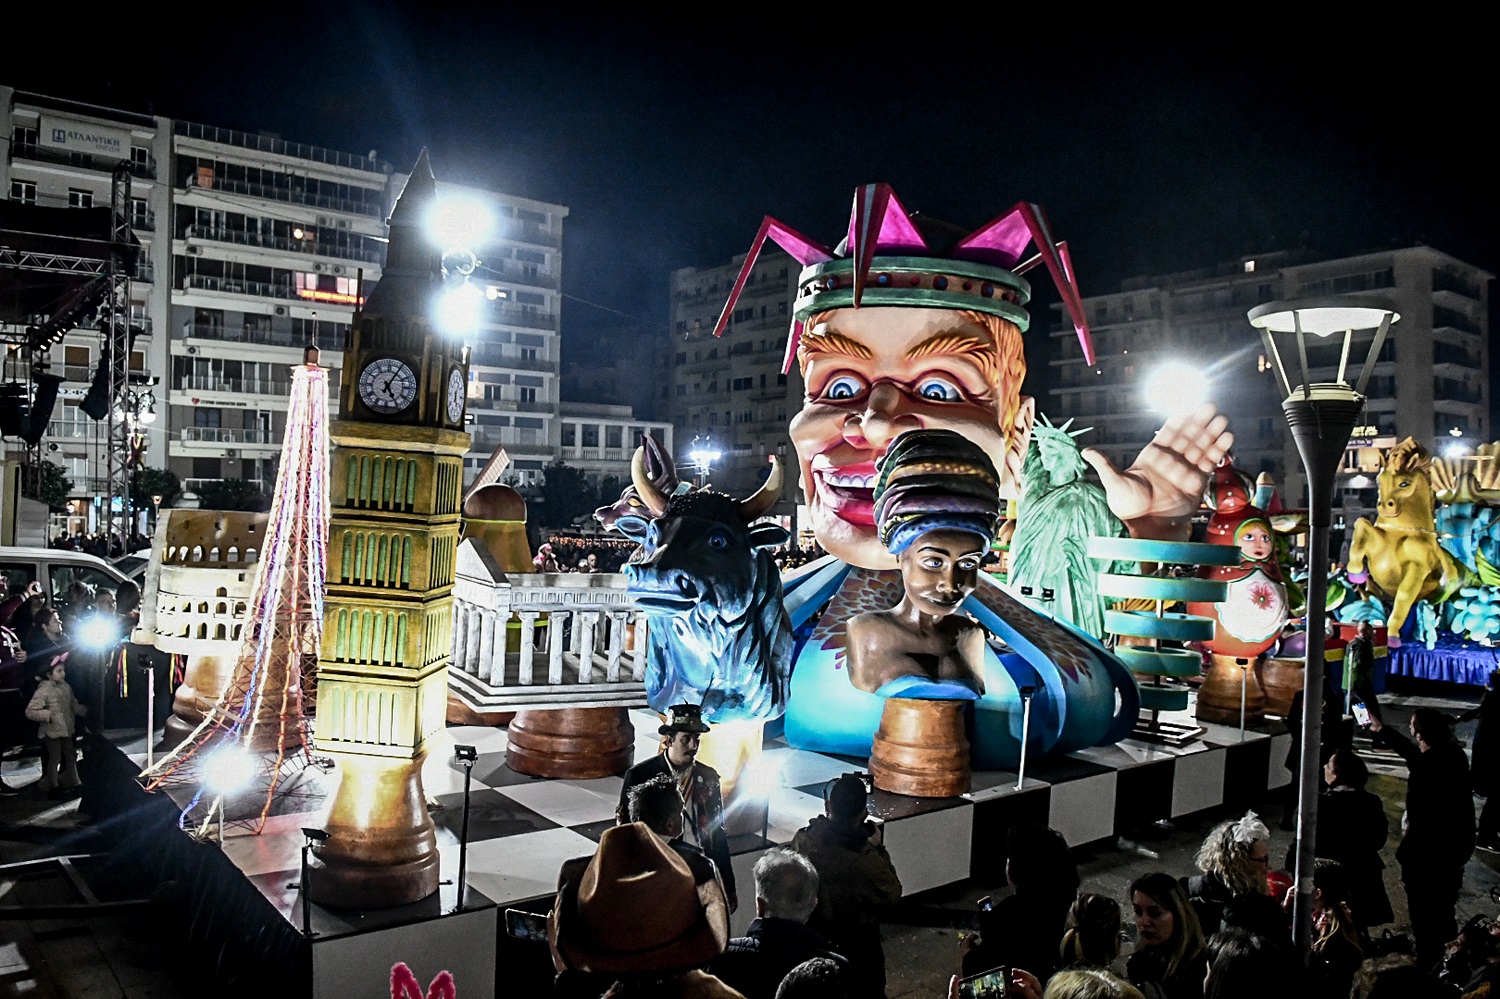 Δείτε Live εικόνα από την νυχτερινή παρέλαση του Σαββάτου στο Πατρινό Καρναβάλι